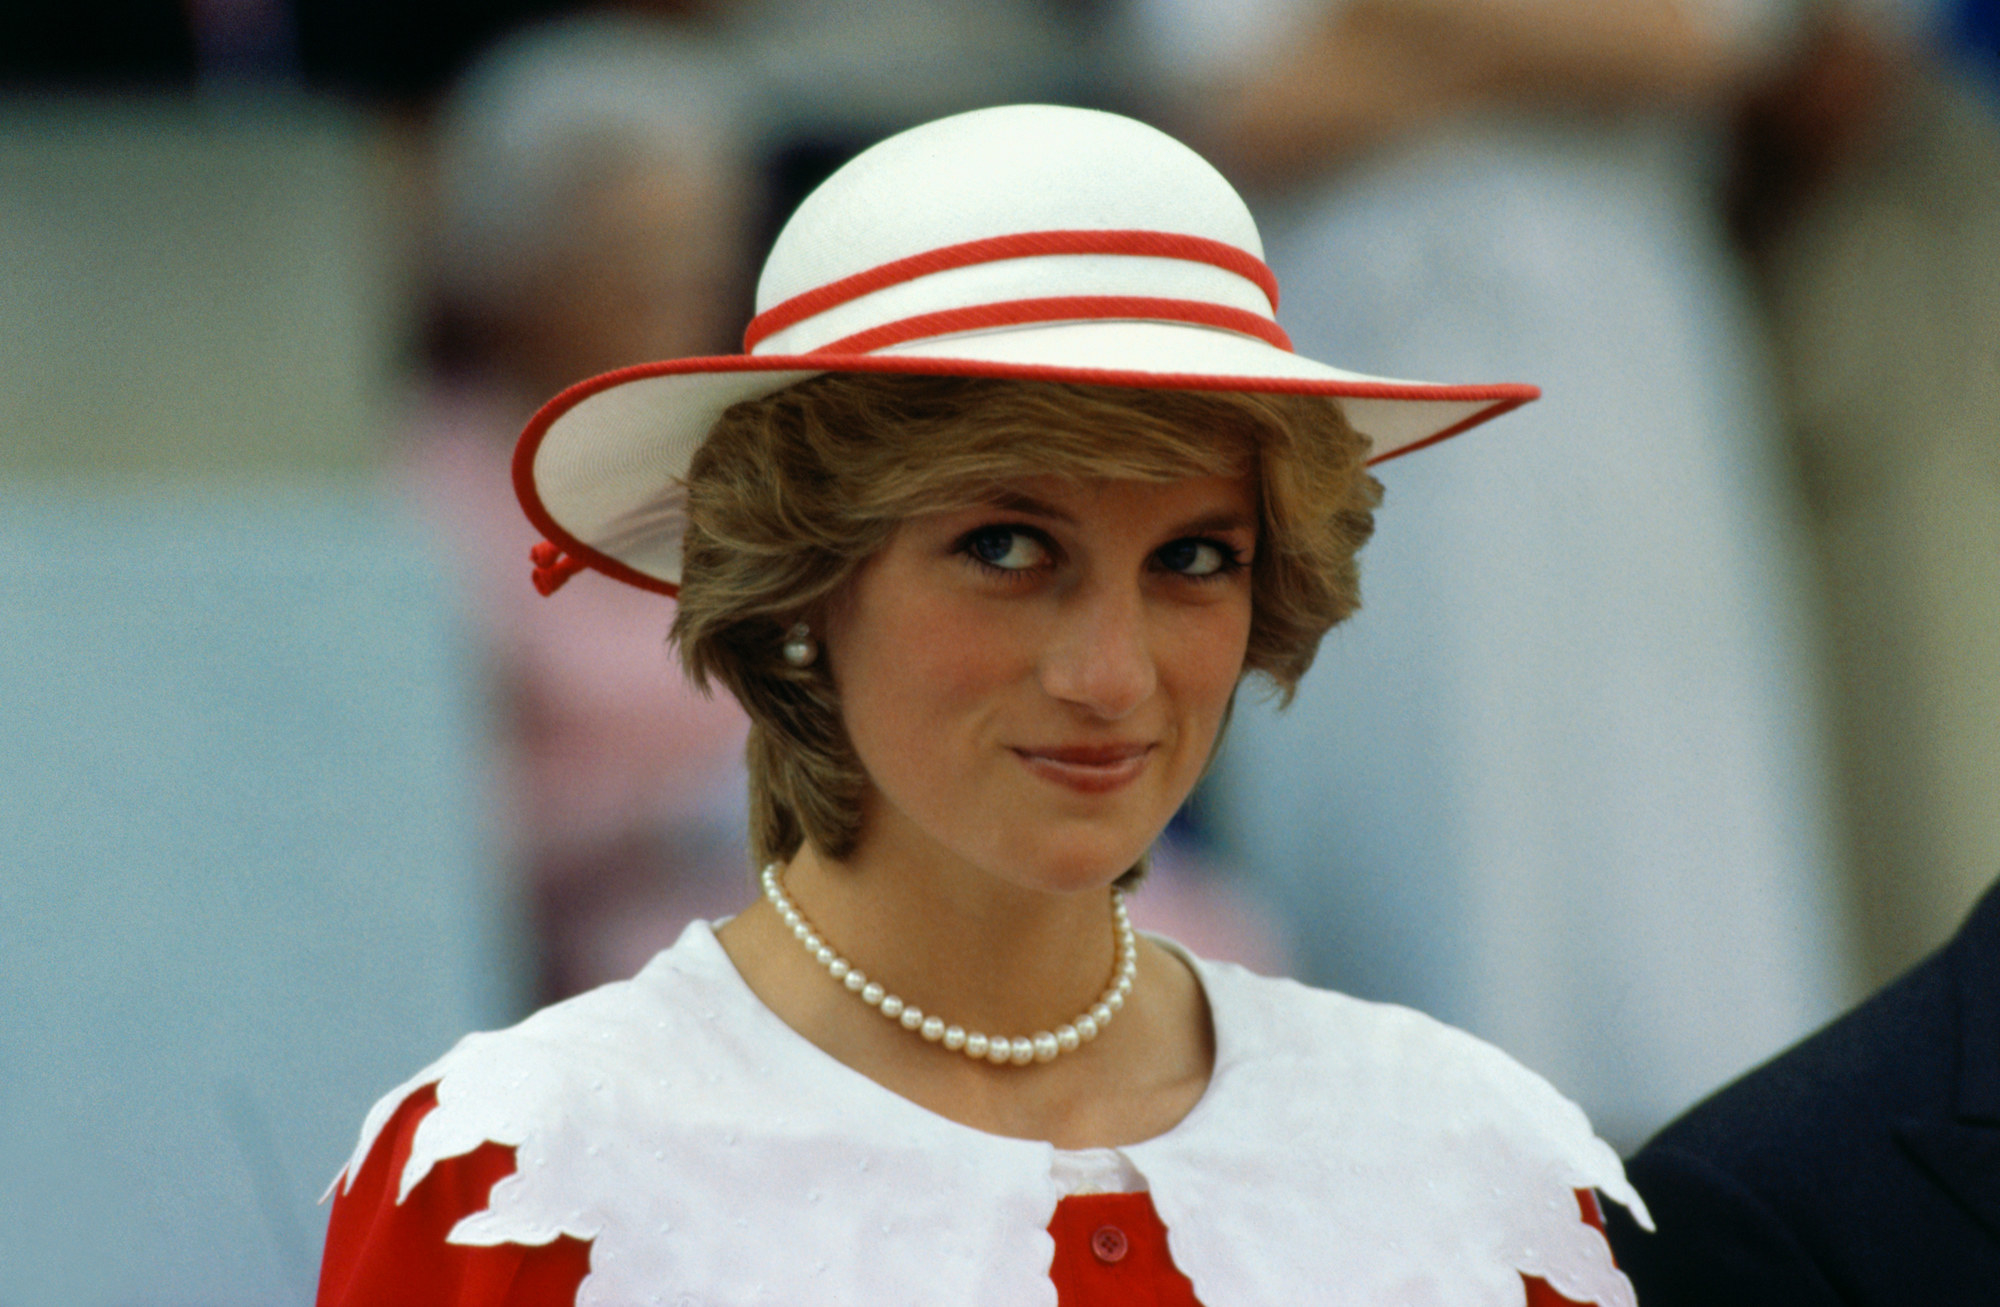 A closeup of Princess Diana